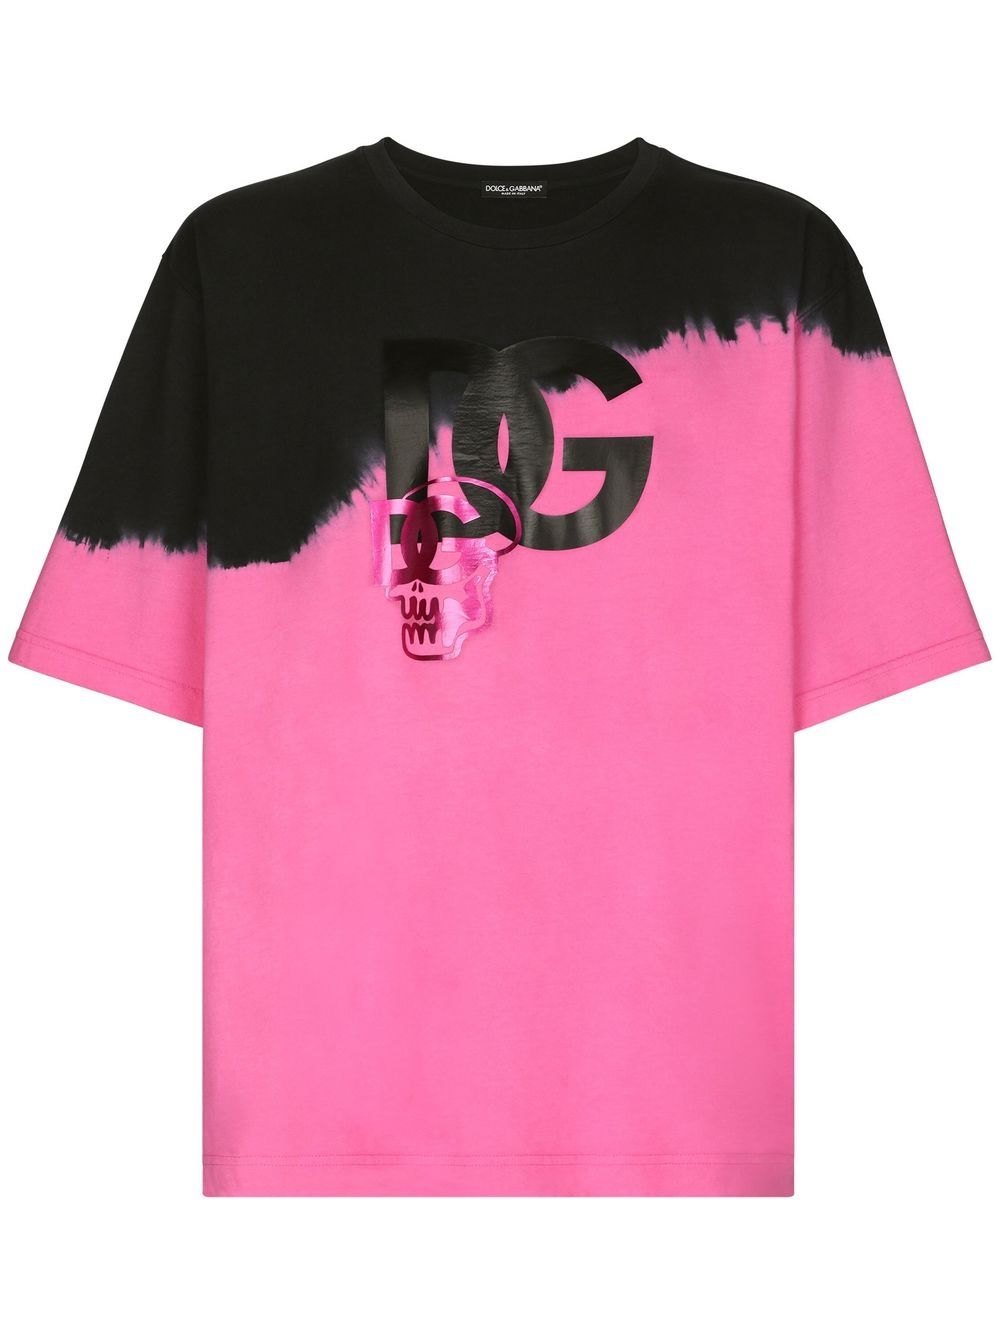 Dolce & Gabbana DG-logo tie-dye T-shirt - Farfetch